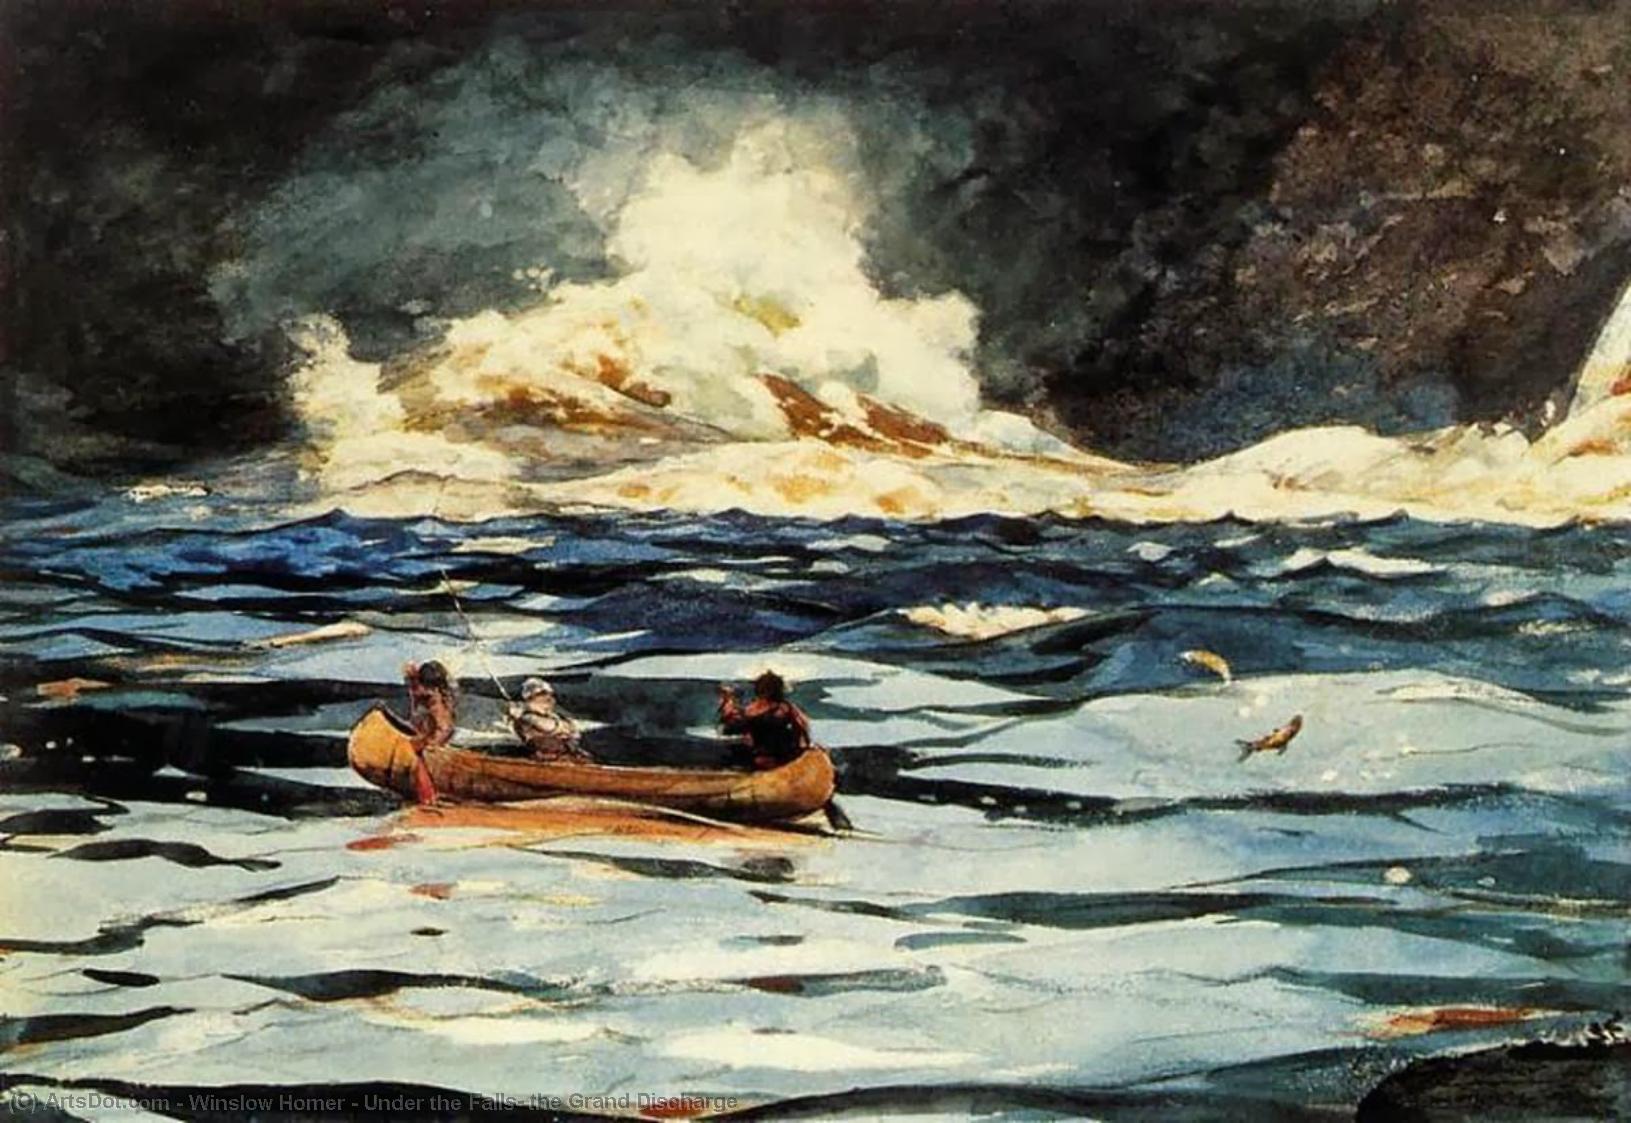 Wikioo.org - Bách khoa toàn thư về mỹ thuật - Vẽ tranh, Tác phẩm nghệ thuật Winslow Homer - Under the Falls, the Grand Discharge